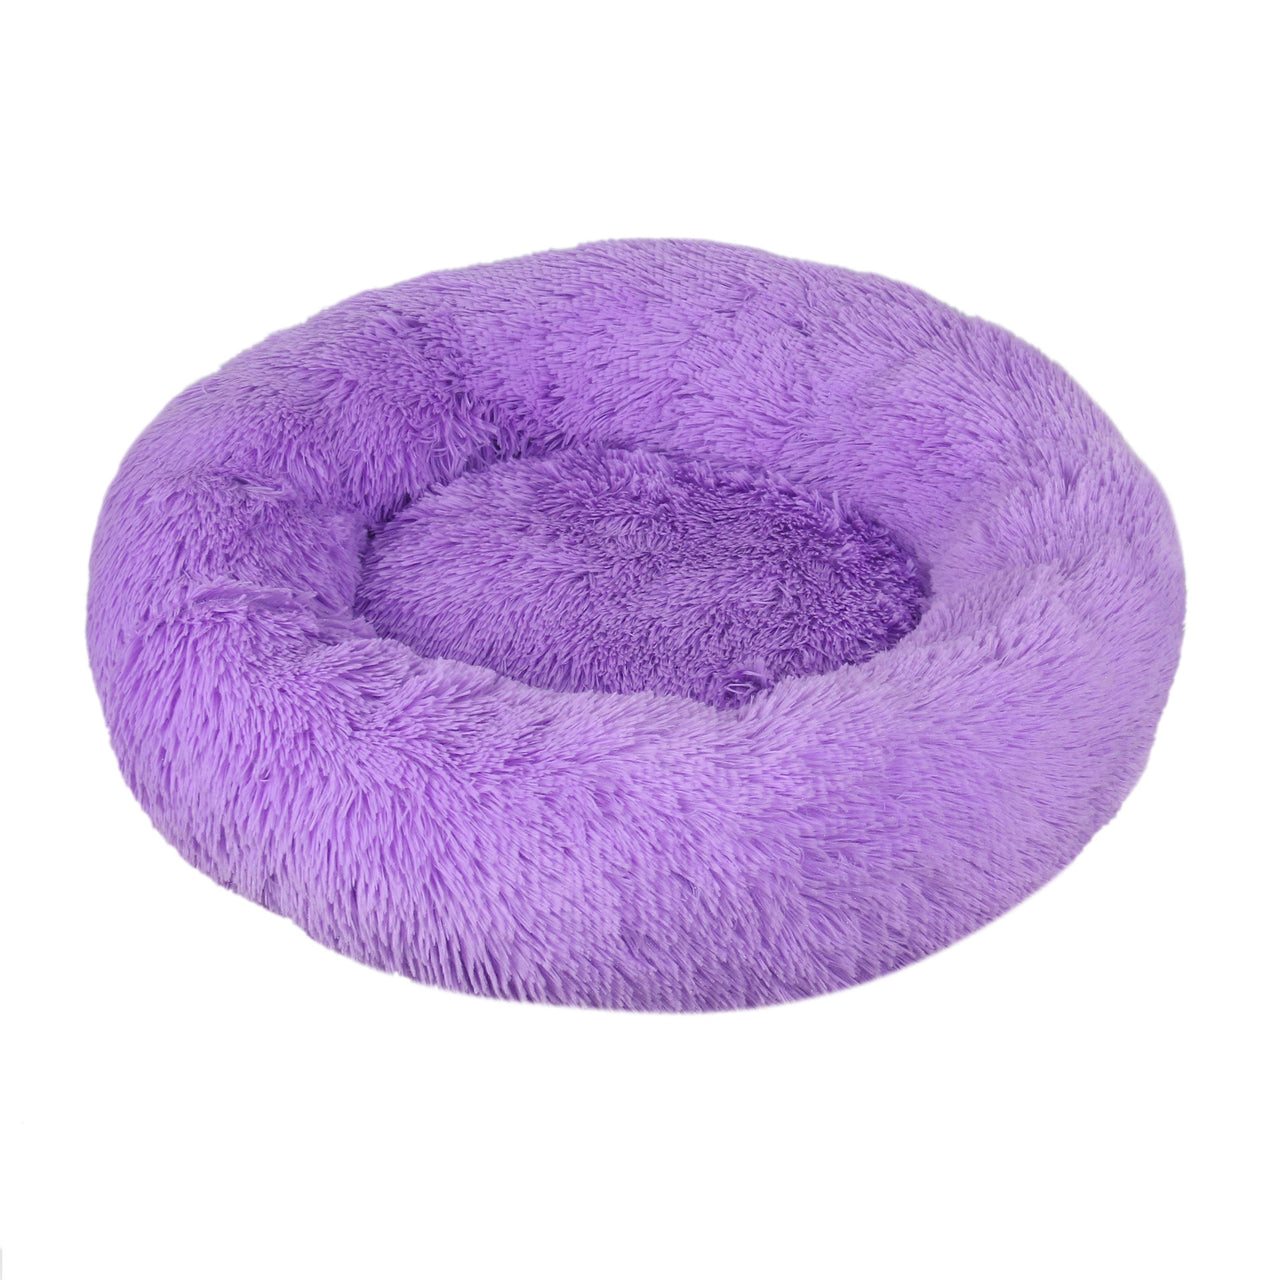 Comfy Dog Bed - Donut Cuddler